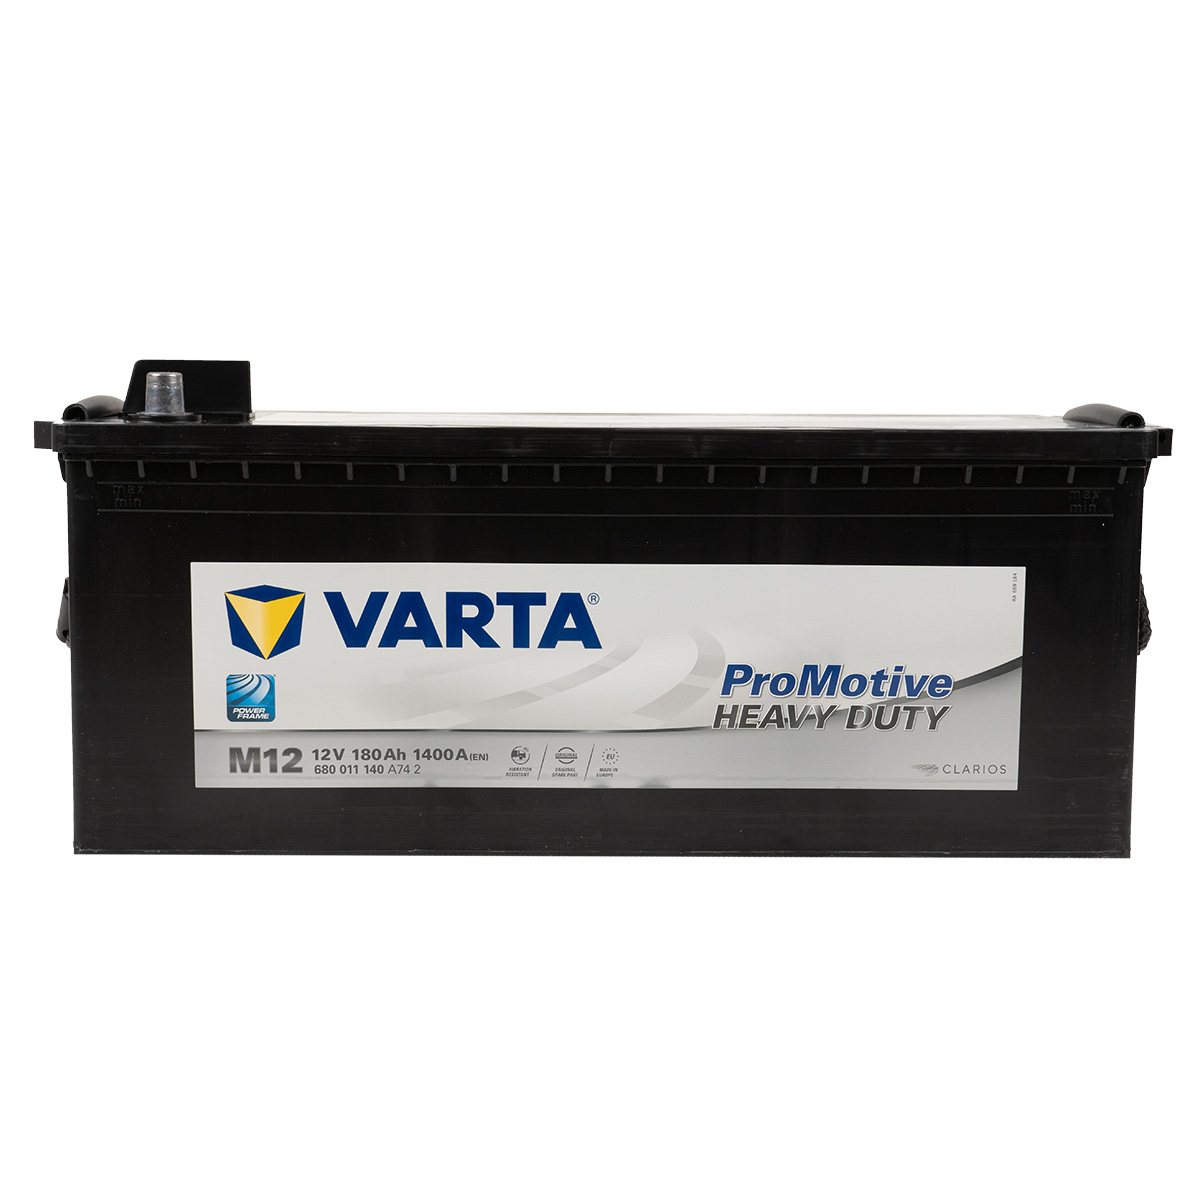 VARTA M12 ProMotive Heavy Duty 180Ah 1400A LKW Batterie 680 011 140